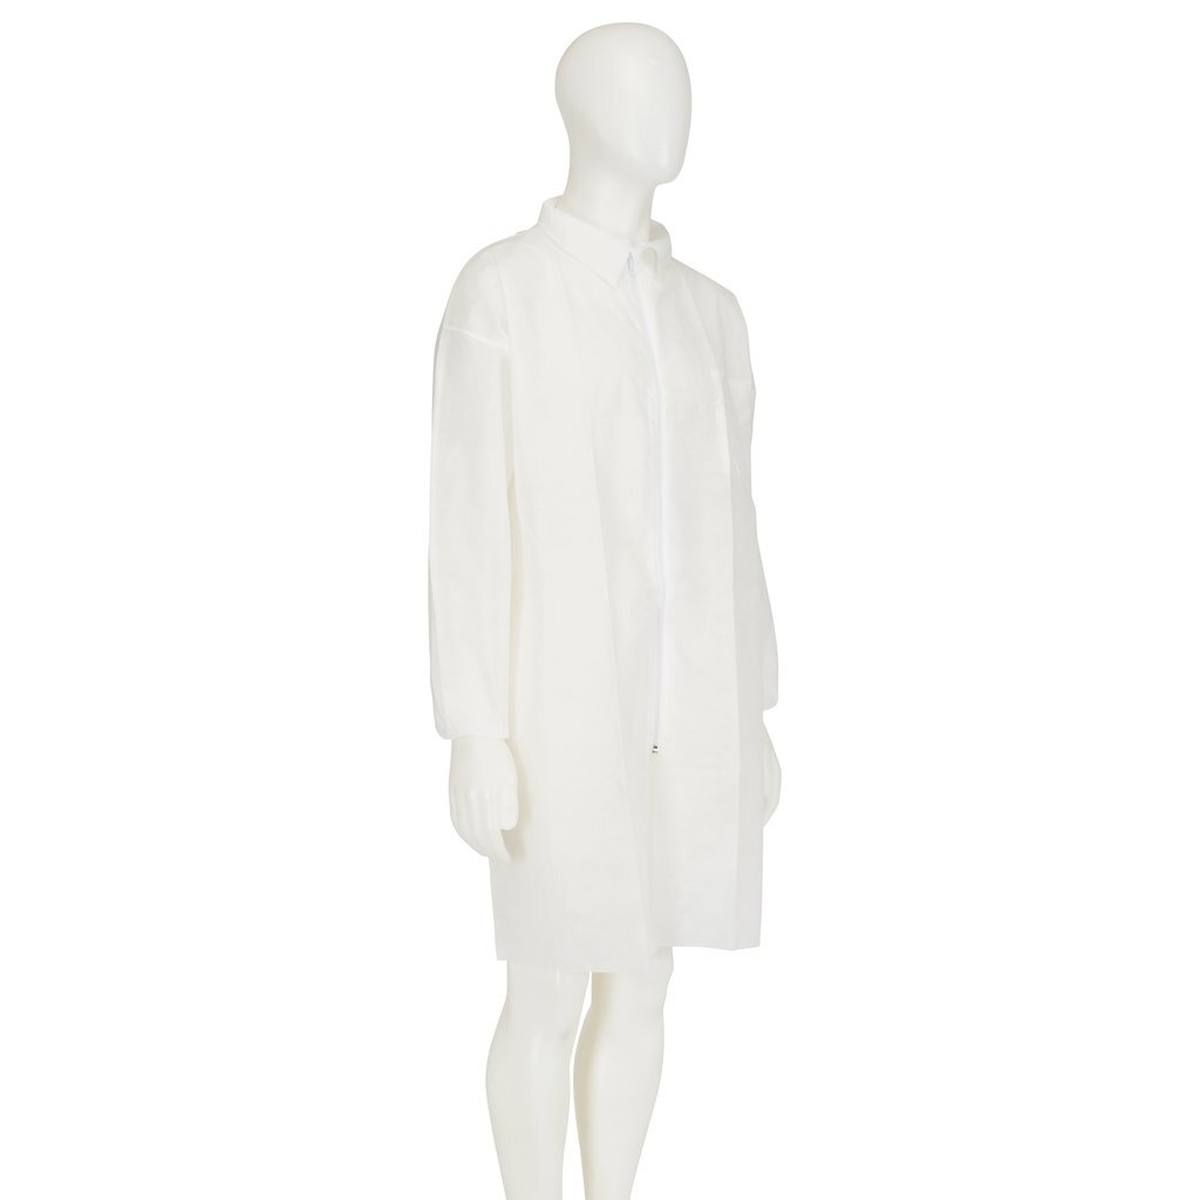 3M 4400 Manteau, blanc, taille 3XL, matériel 100% polypropylène, respirant, très léger, avec fermeture éclair